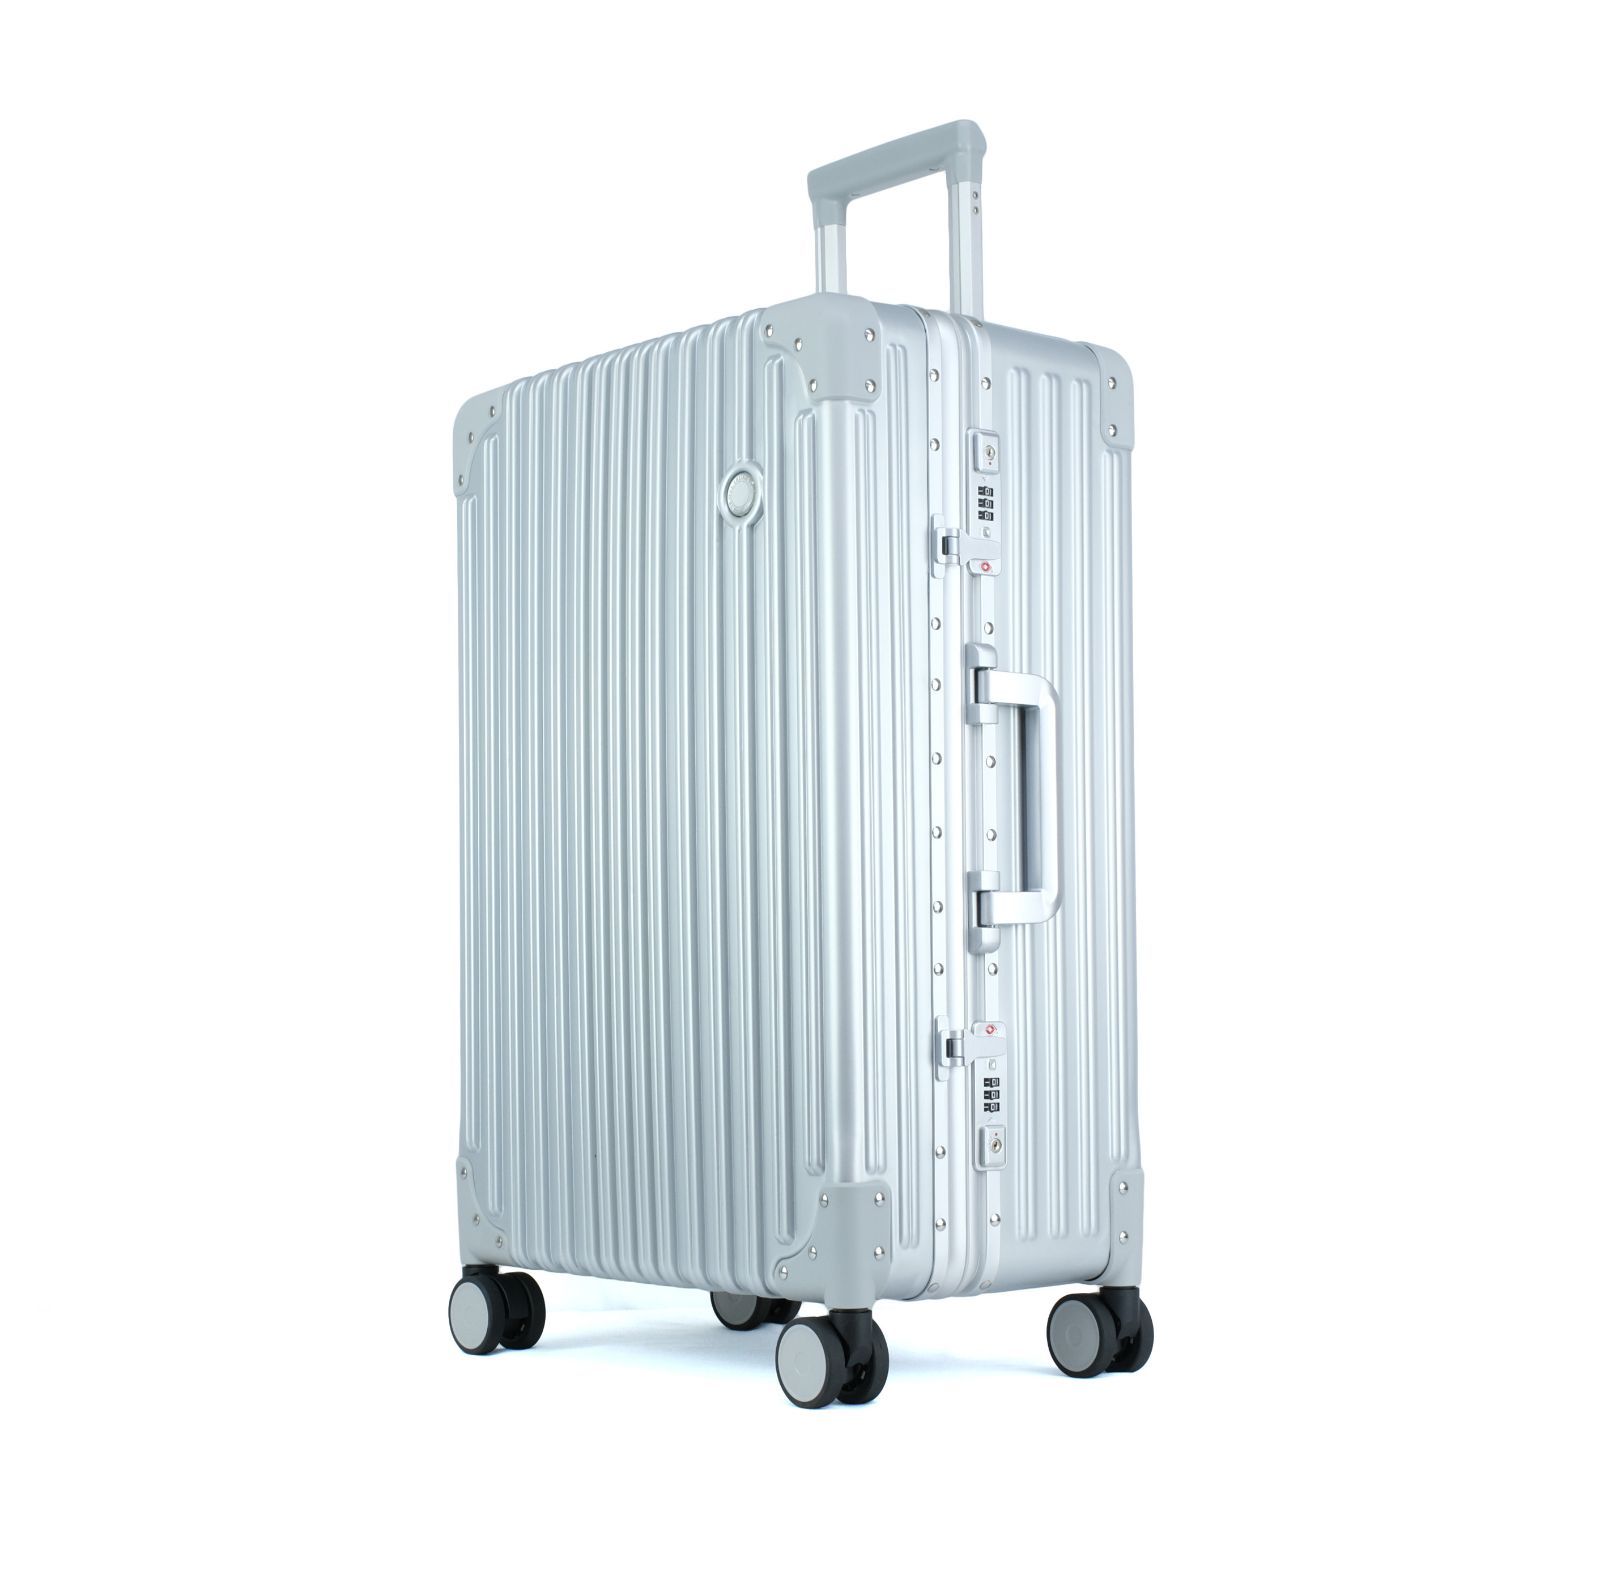 TRUNKTRAVEL] スーツケース キャリーバッグ Mサイズ シルバー アルミ ...